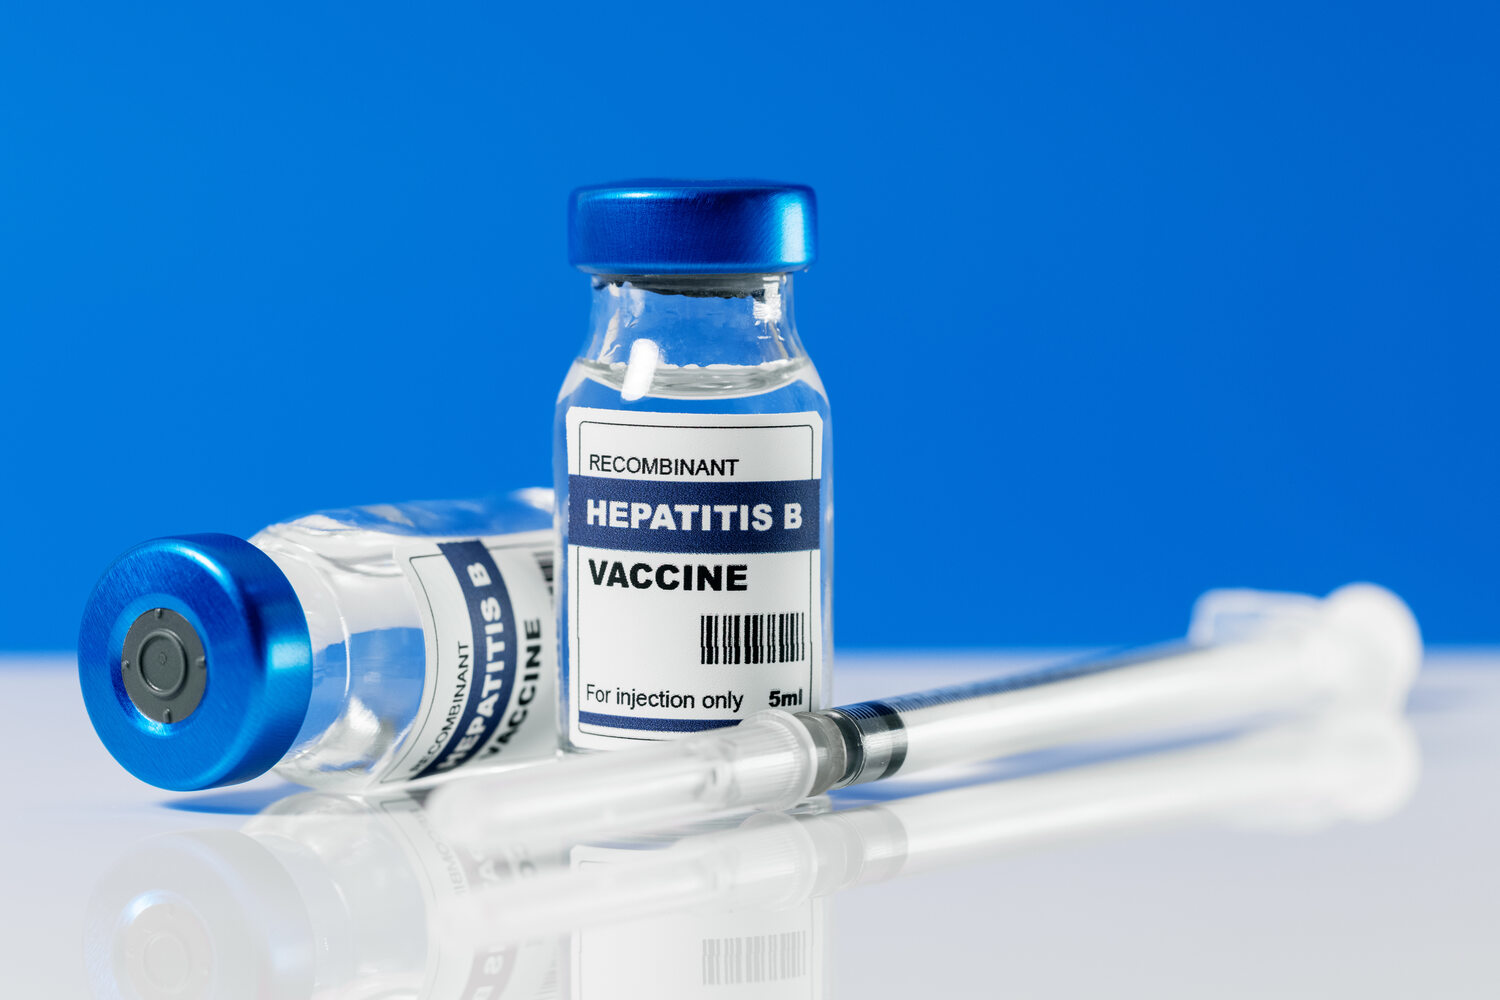 A hepatitis vaccine